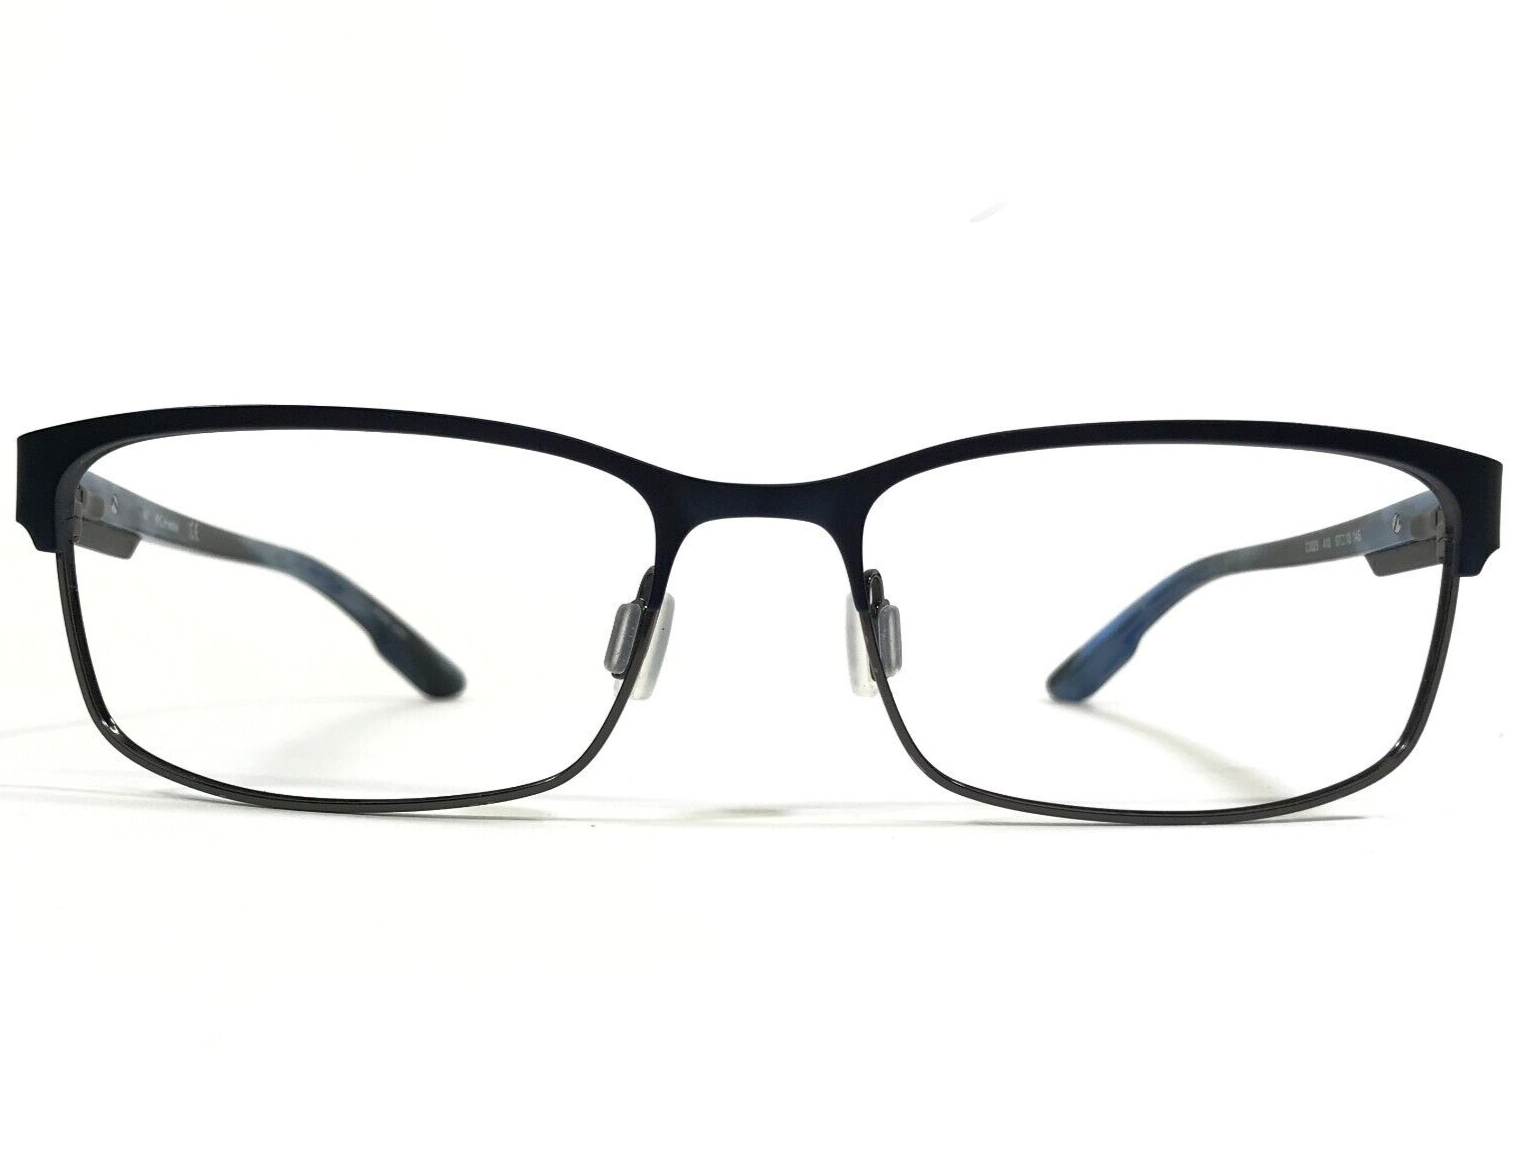 Primary image for Columbia Eyeglasses Frames C3025 410 Blue Gray Rectangular Full Rim 57-18-145